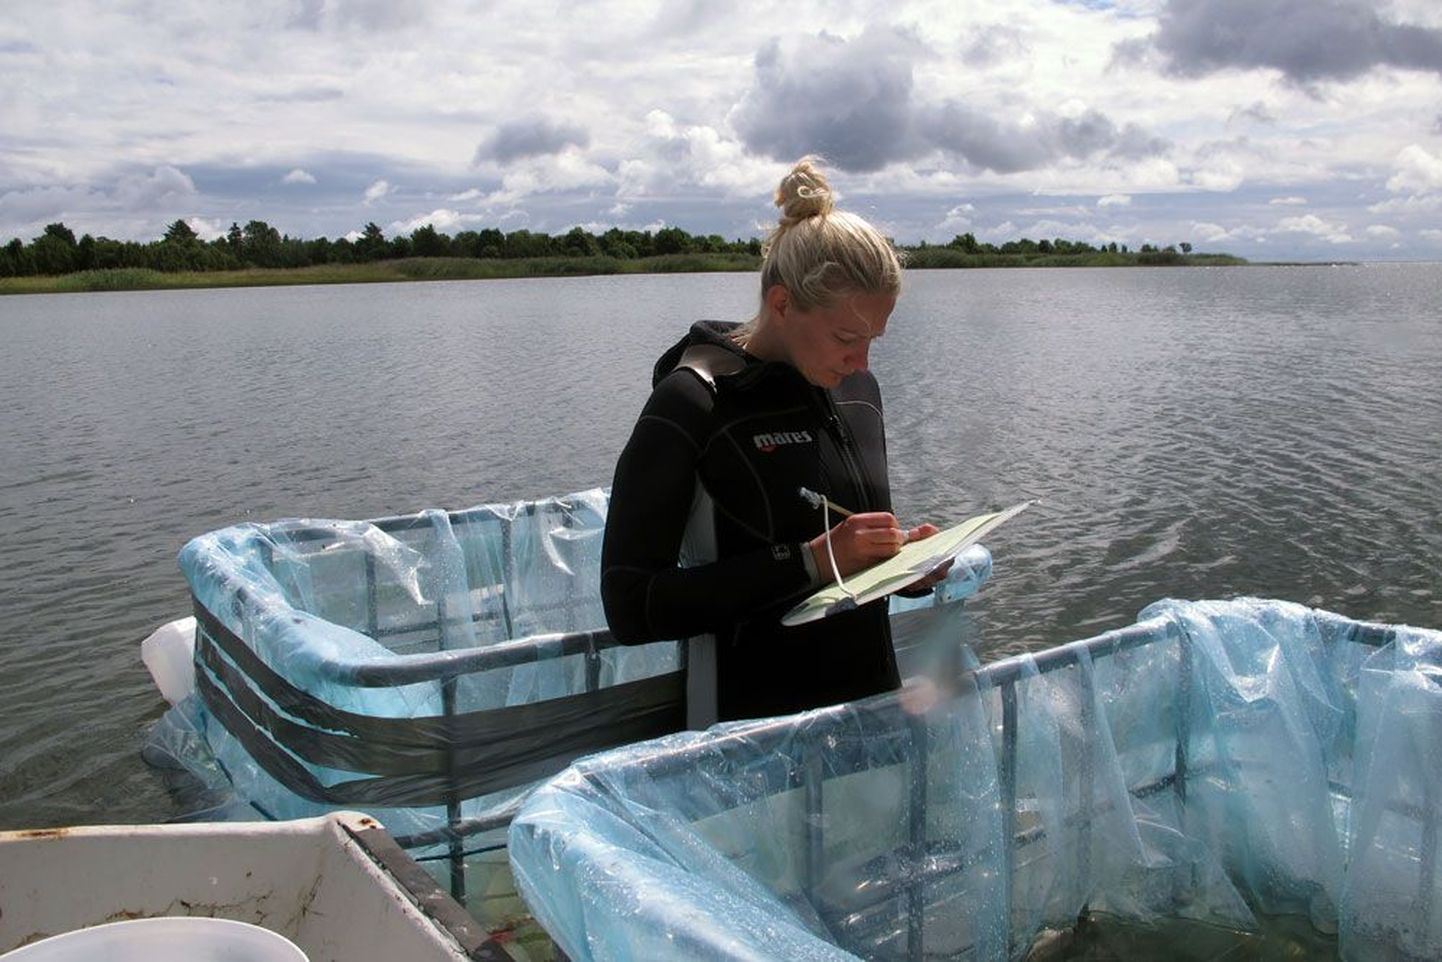 Tartu Ülikooli doktorant Liina Pajusalu rajas Saaremaa lõunarannikule katsevannid erineva pH-tasemega ning mõõtis hiljem laboris erinevates tingimustes kasvanud vetikate fotosünteesimise kiirust. Tulemused annavad alust arvata, et happelisem merevesi soodustab eutrofeerumist.